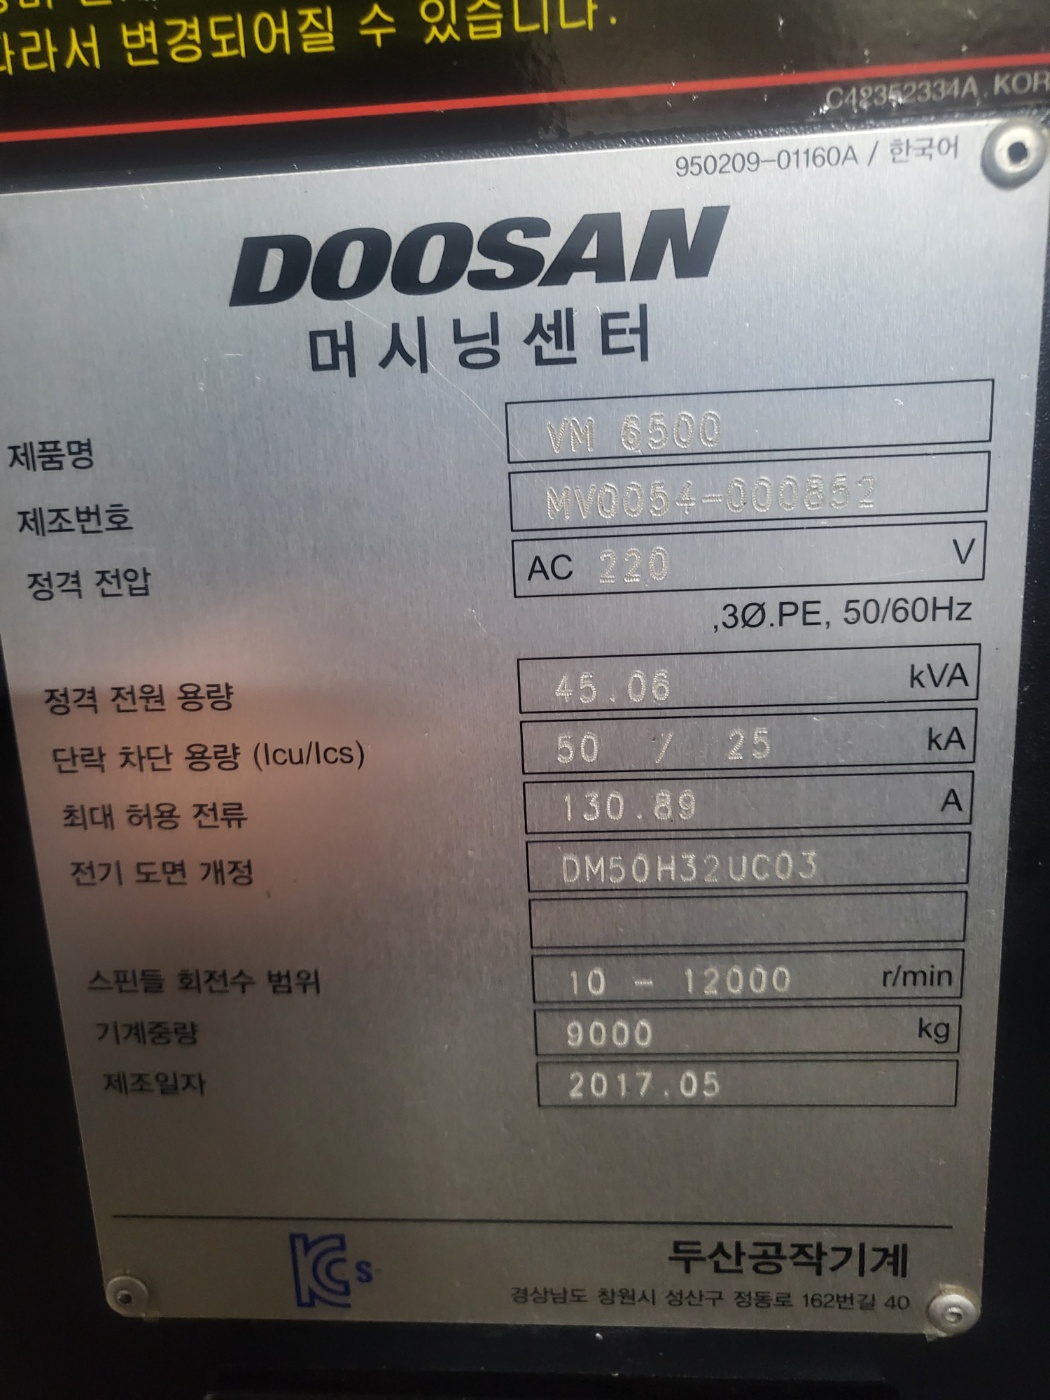 두산6호 머시닝센타 VM-6500(2017년식)